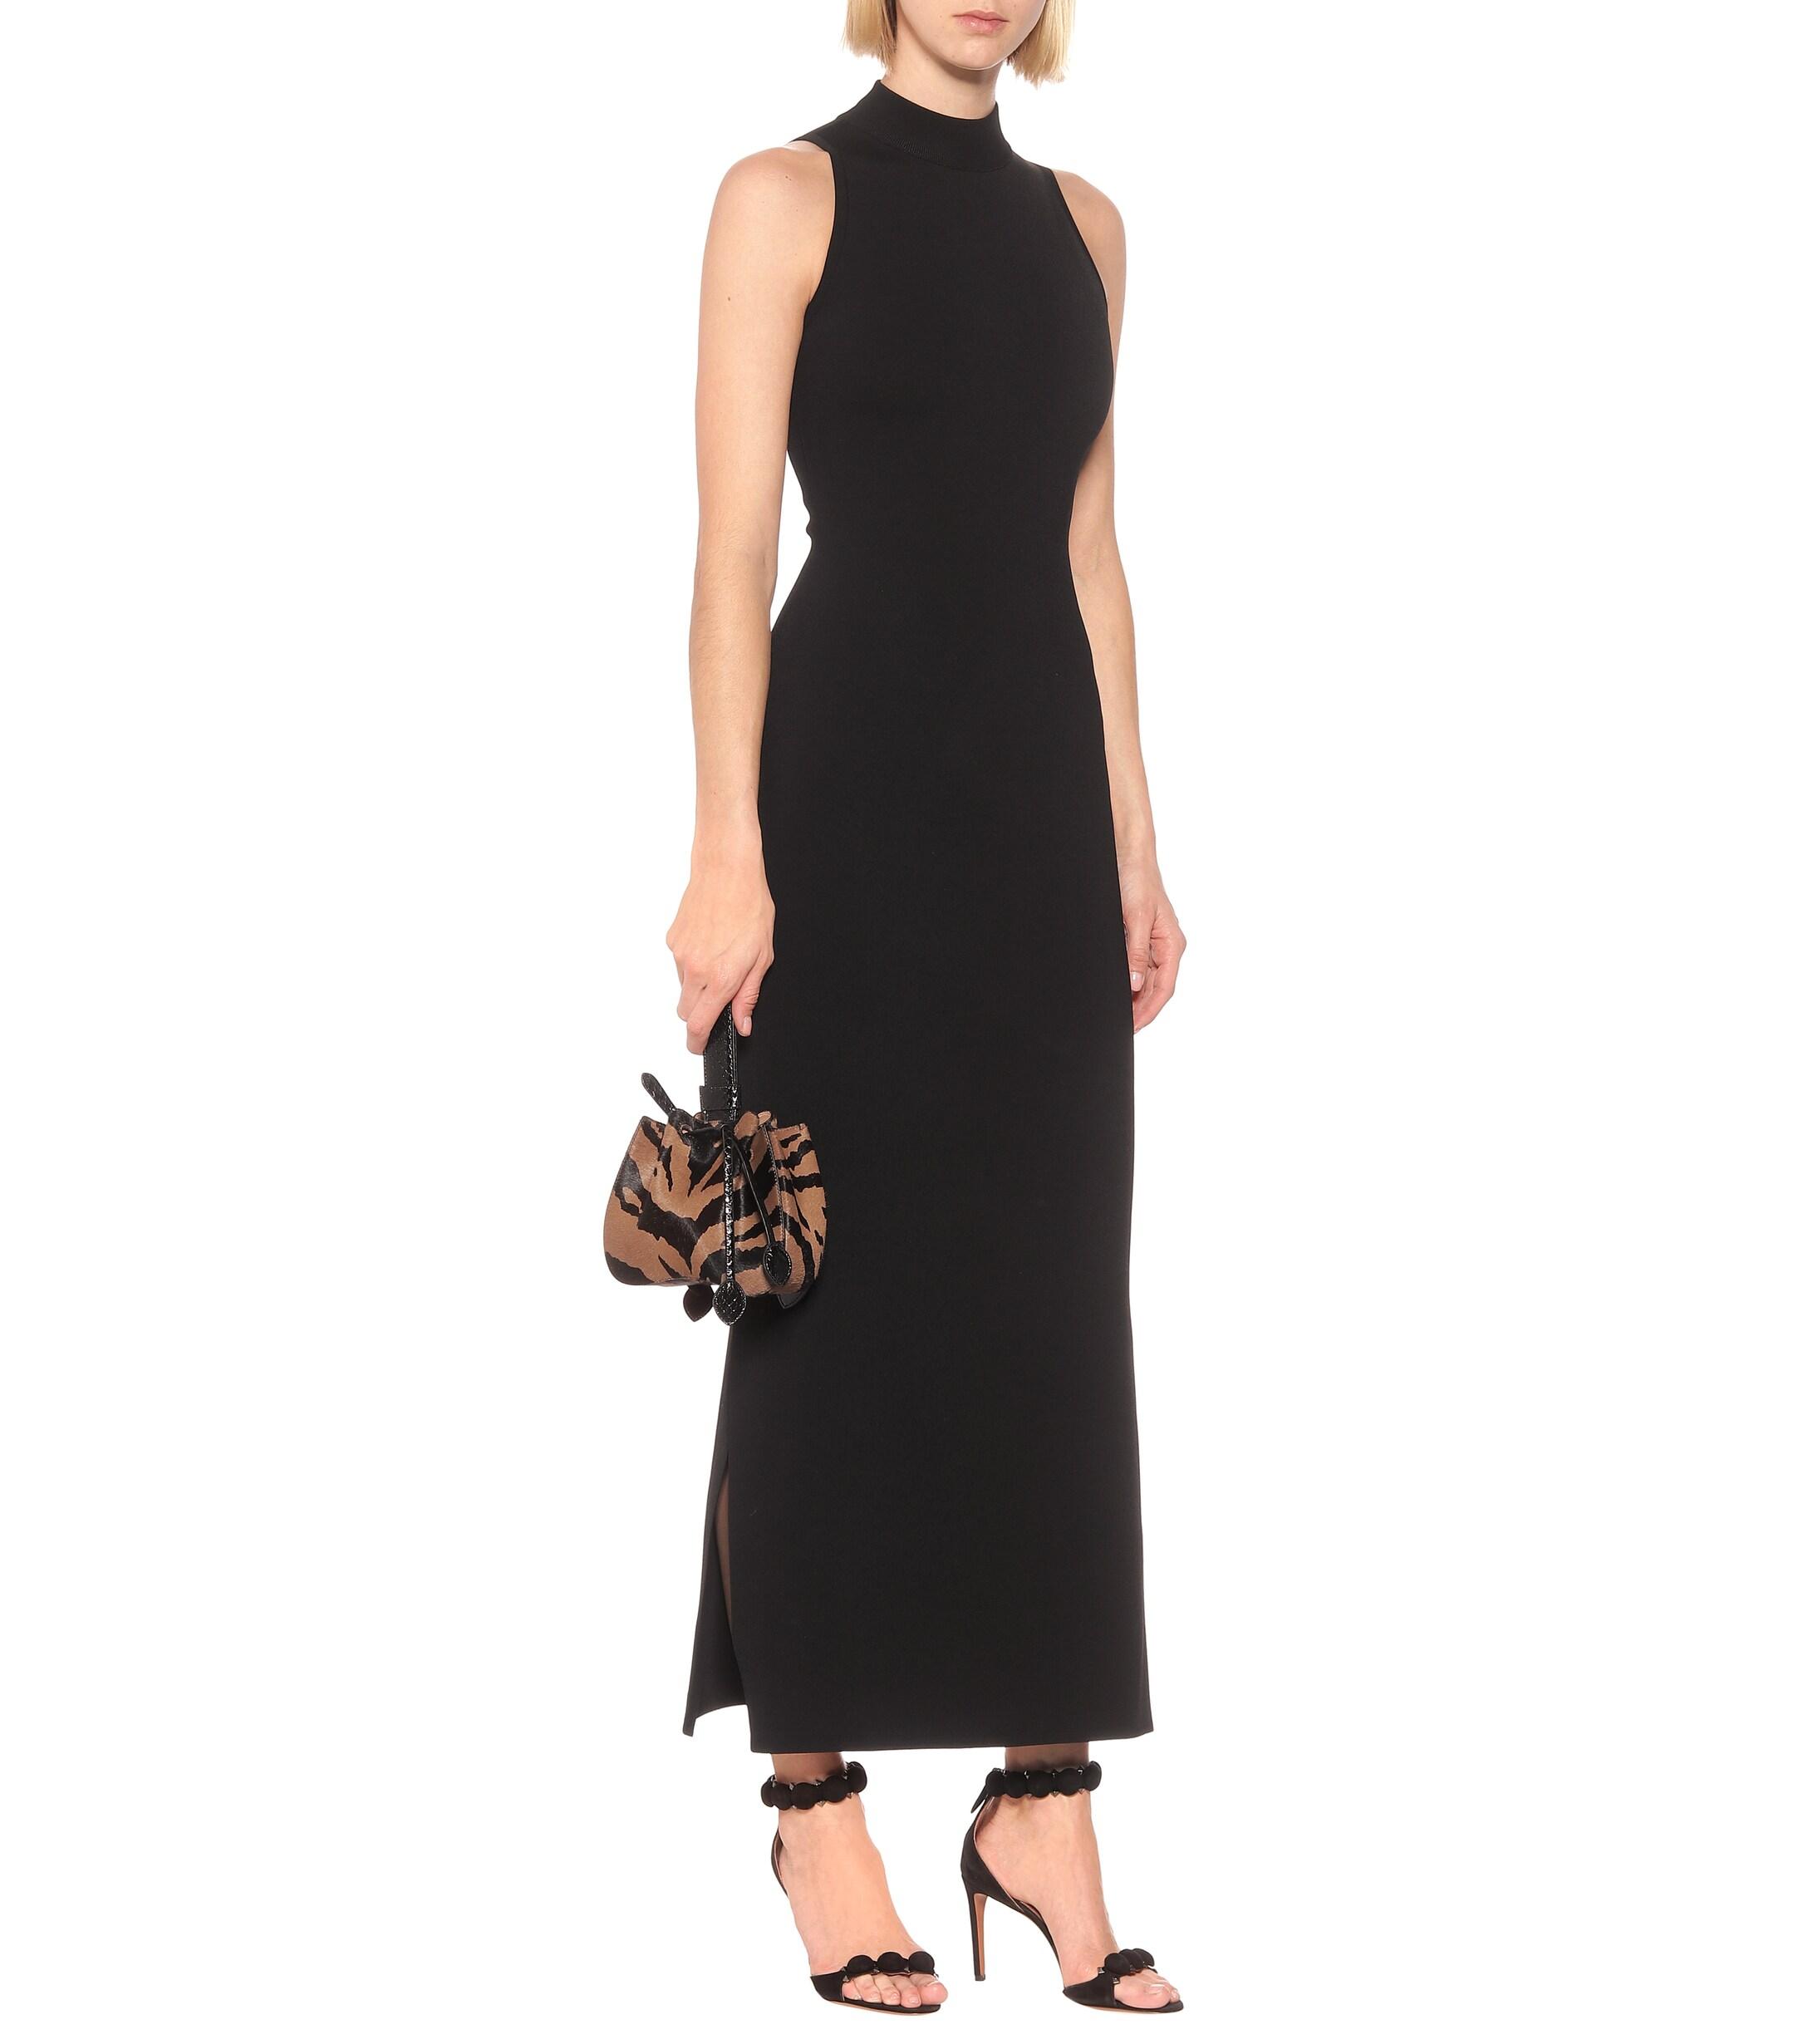 Alaïa Knit Maxi Dress in Black - Lyst